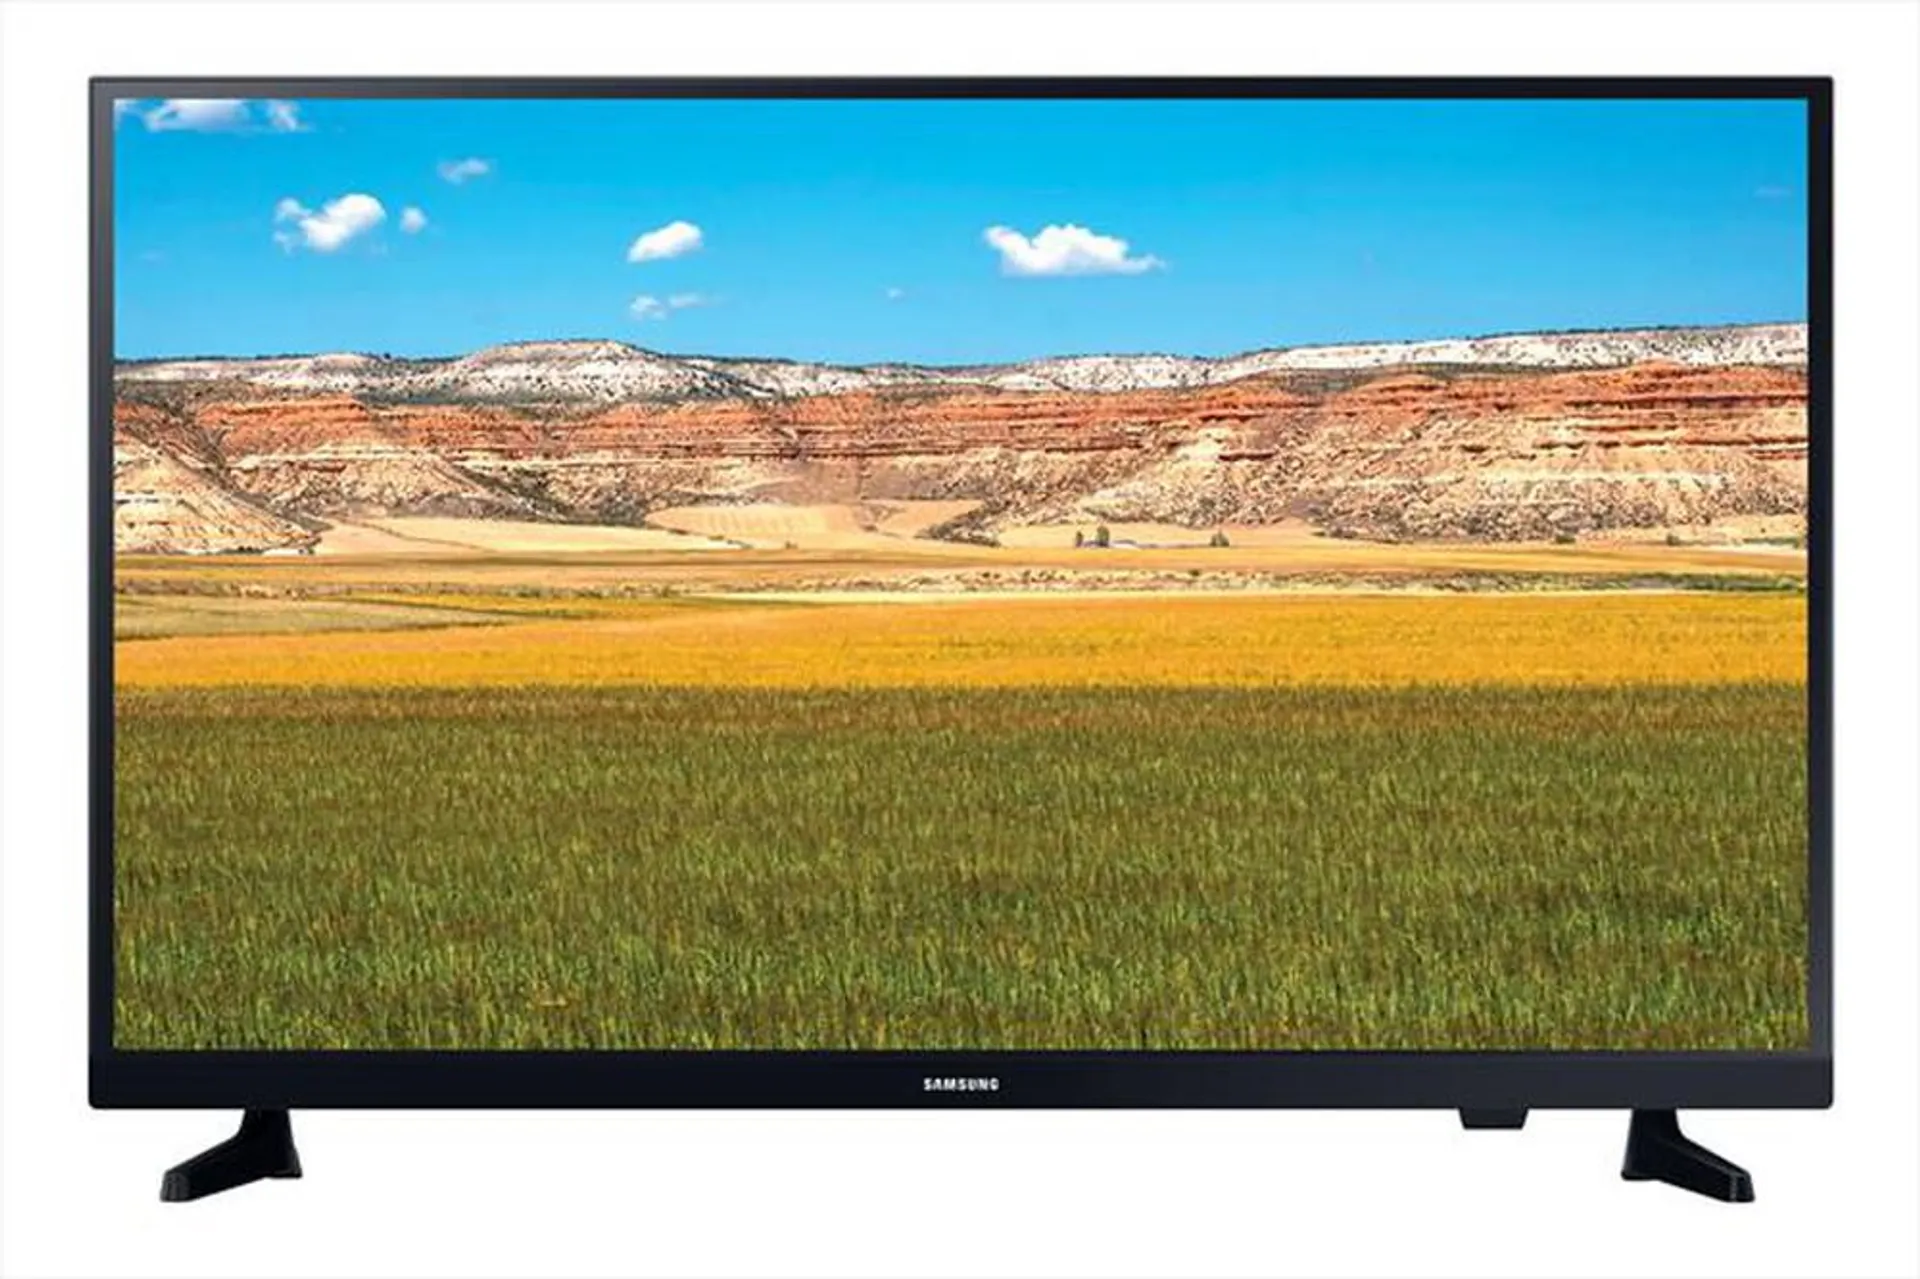 SAMSUNG - TV LED HD 32" UE32T4000